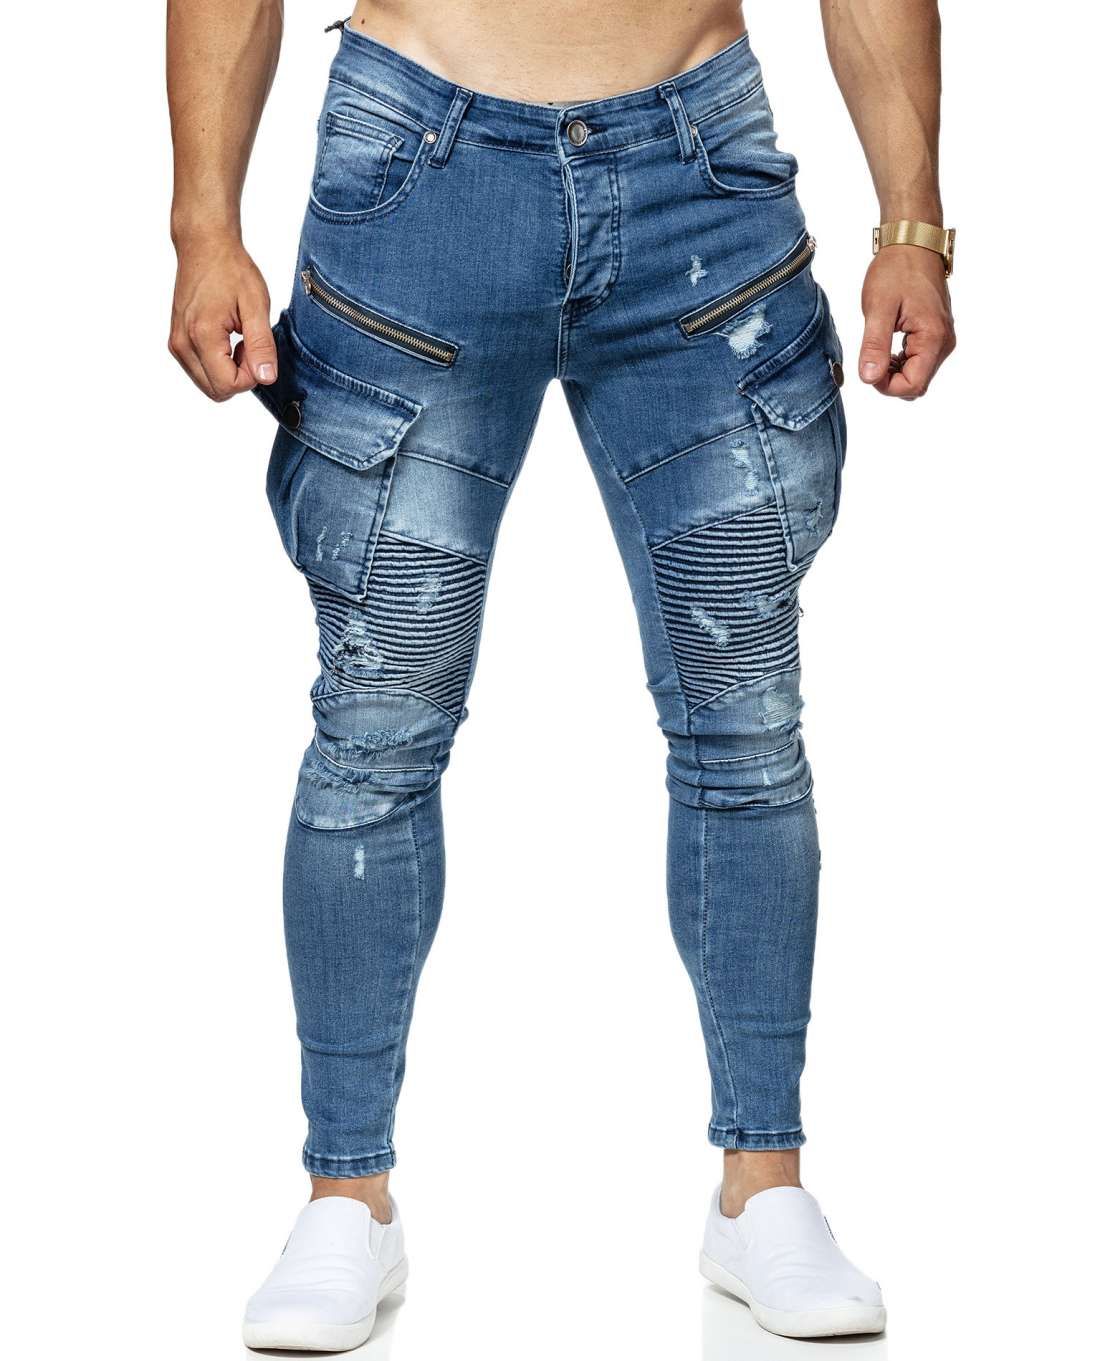 Clipsaz Jeans Blue Jerone